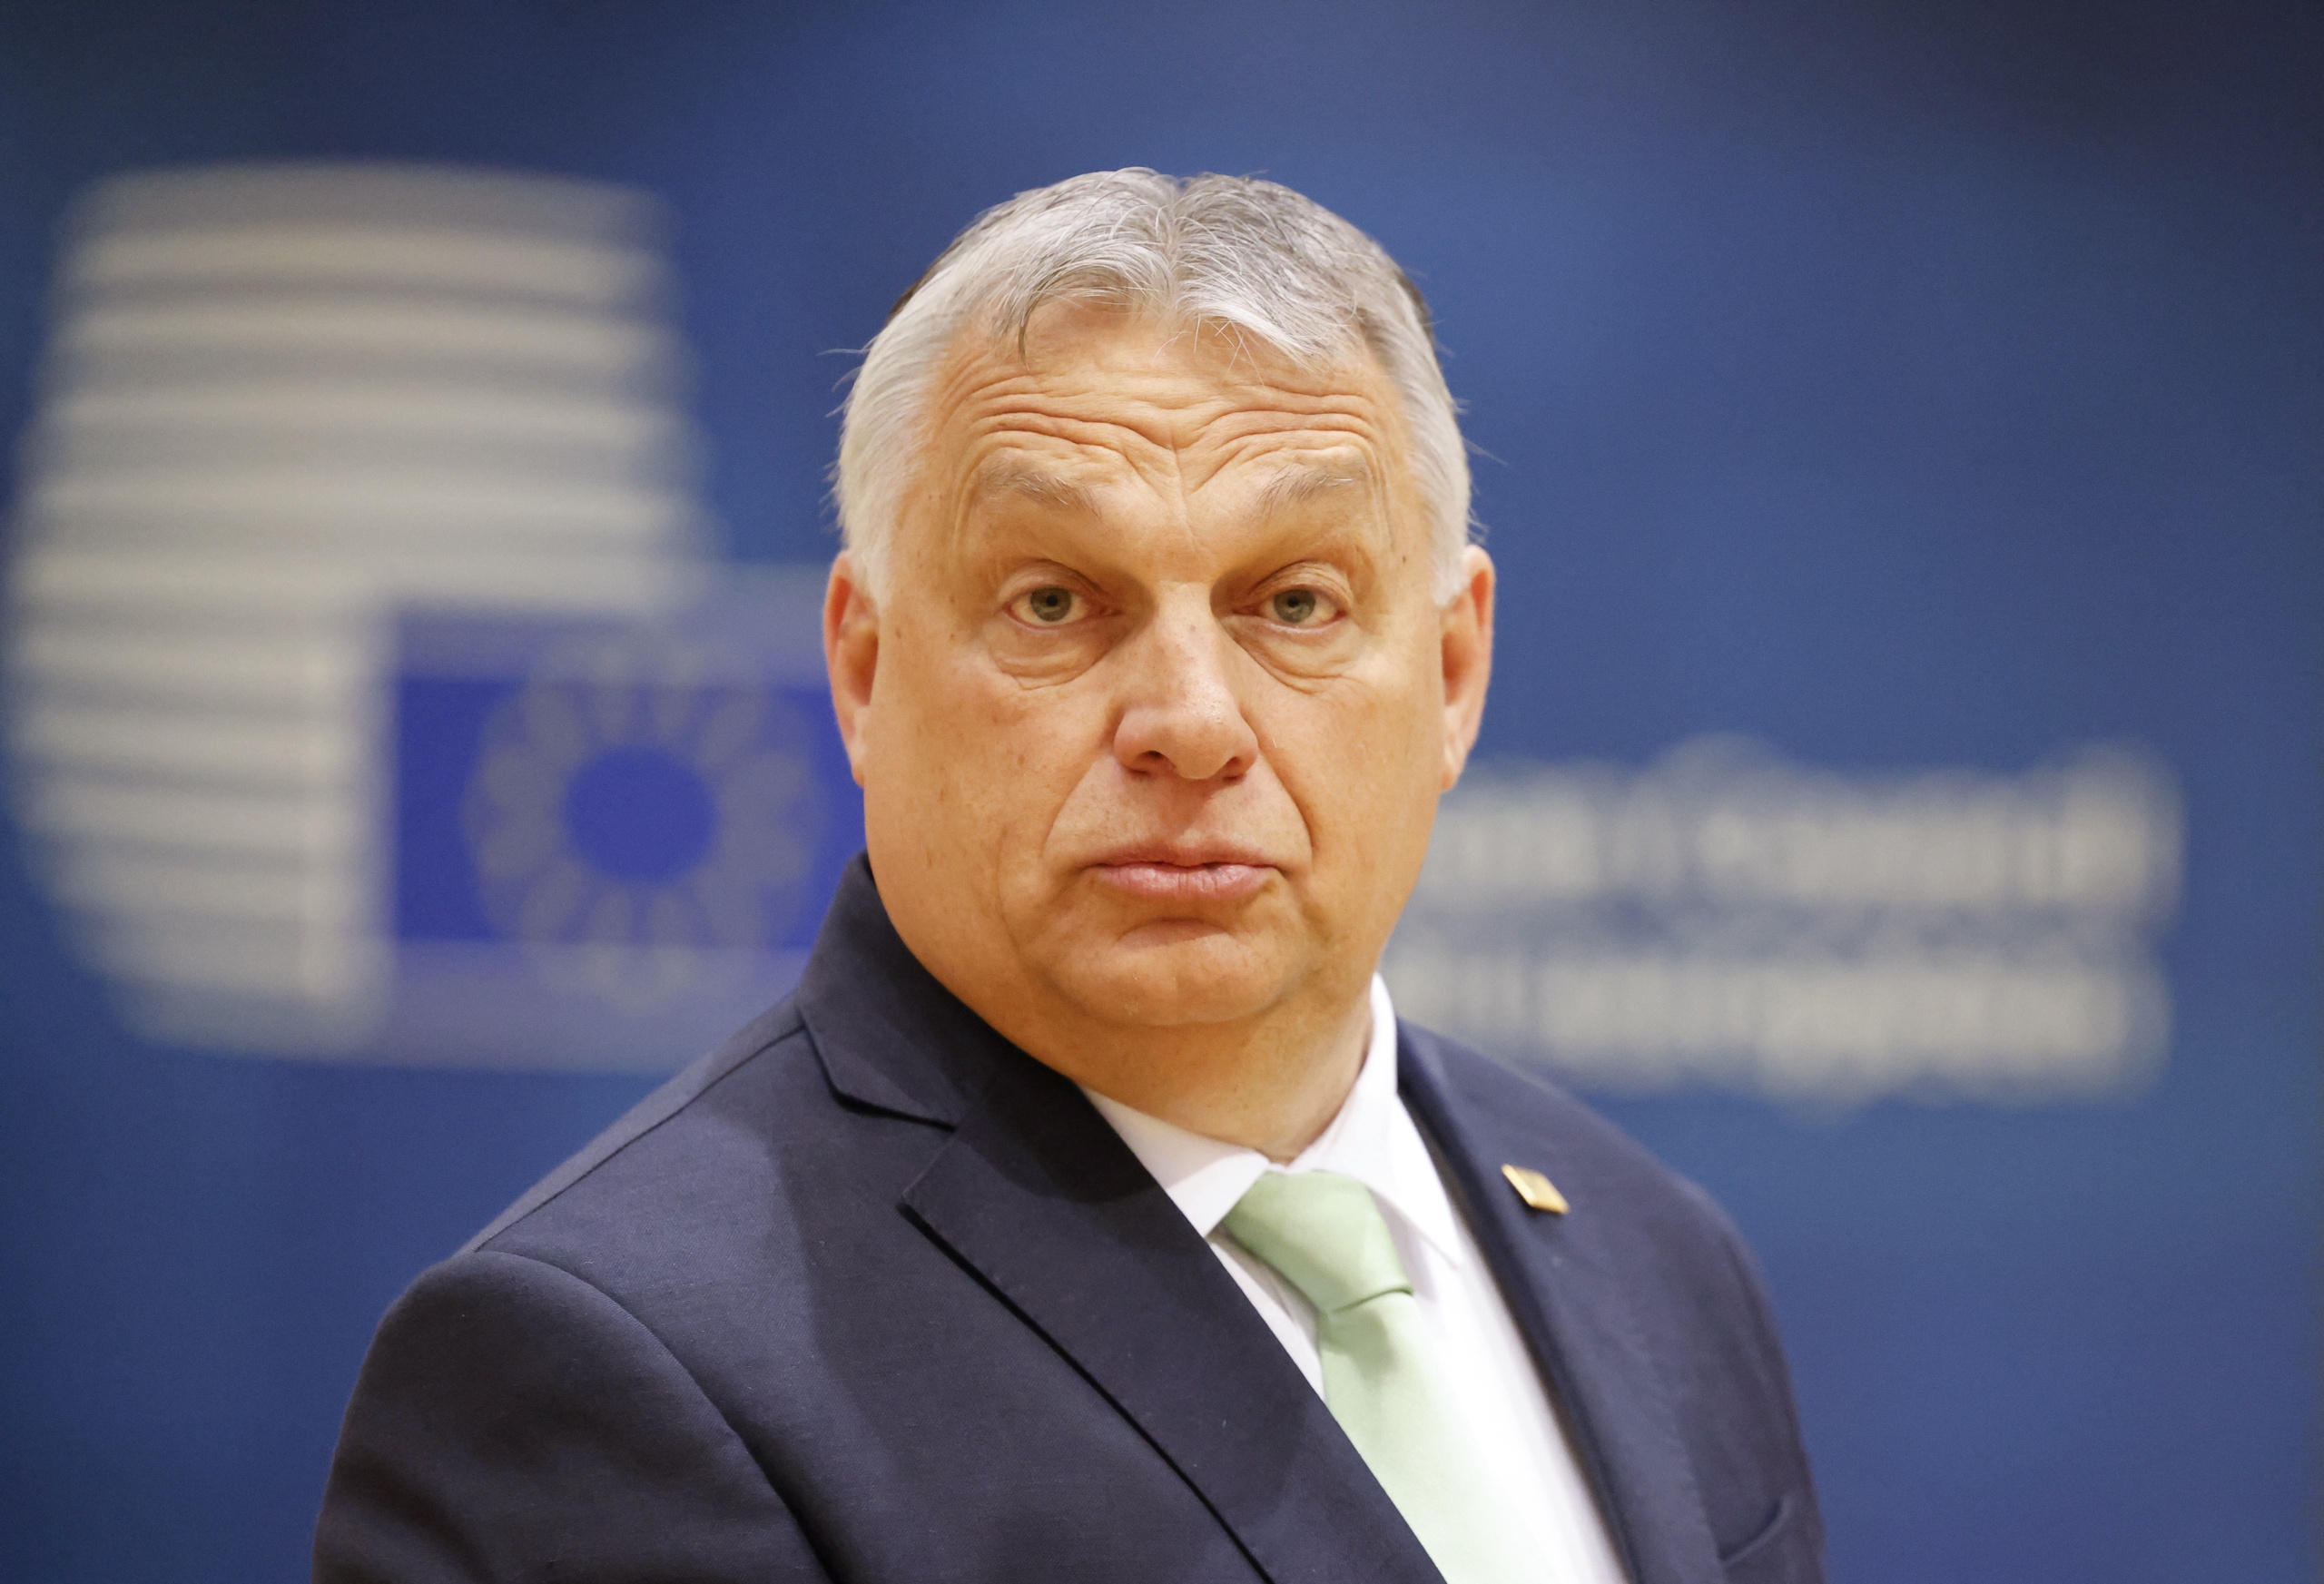 Hongarije heeft volgens Europarlementariër Bart Groothuis geen plek meer in de EU. 'Orbán heeft de democratie in zijn land echt afgeschaft'. 